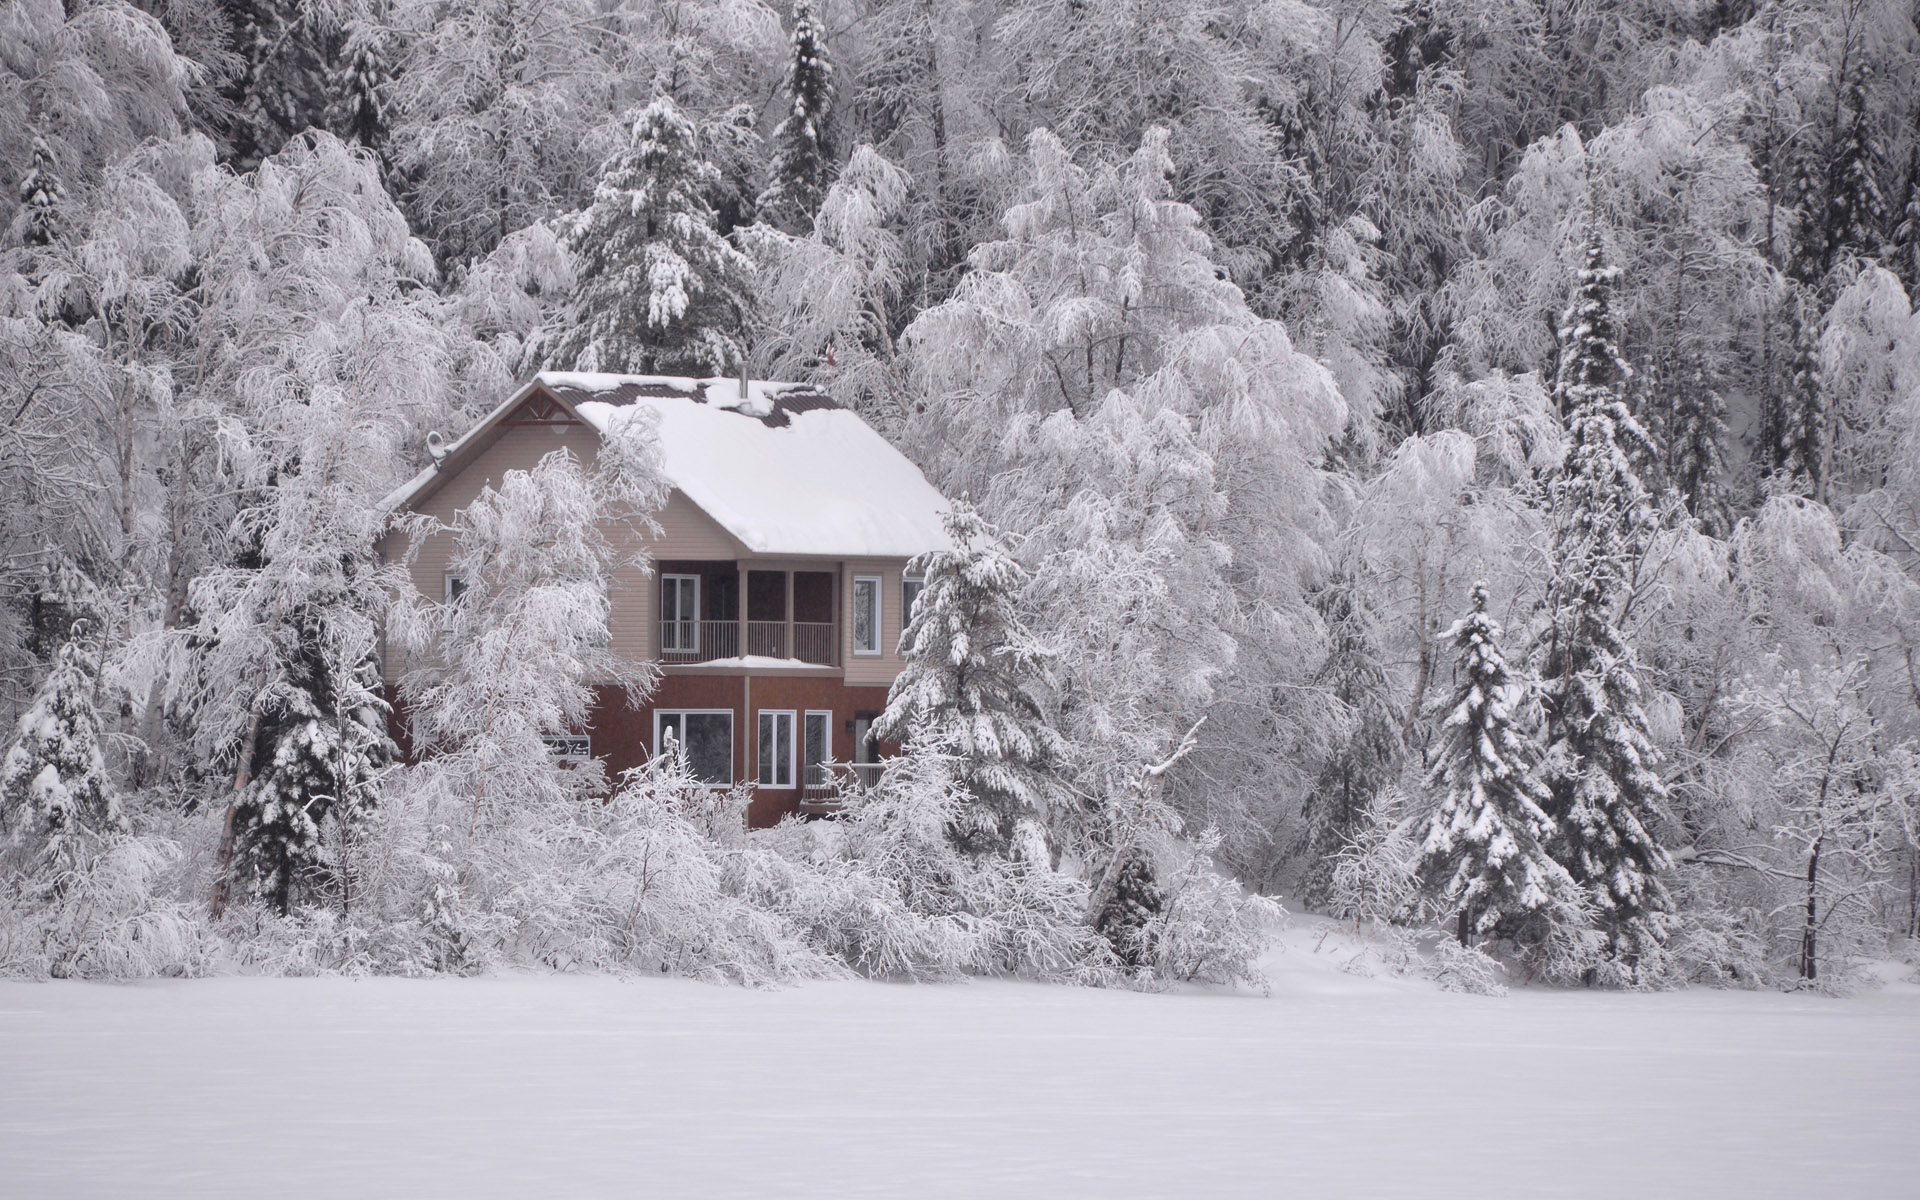 唯美冬日雪景图片电脑壁纸,分辨率:1920x1200